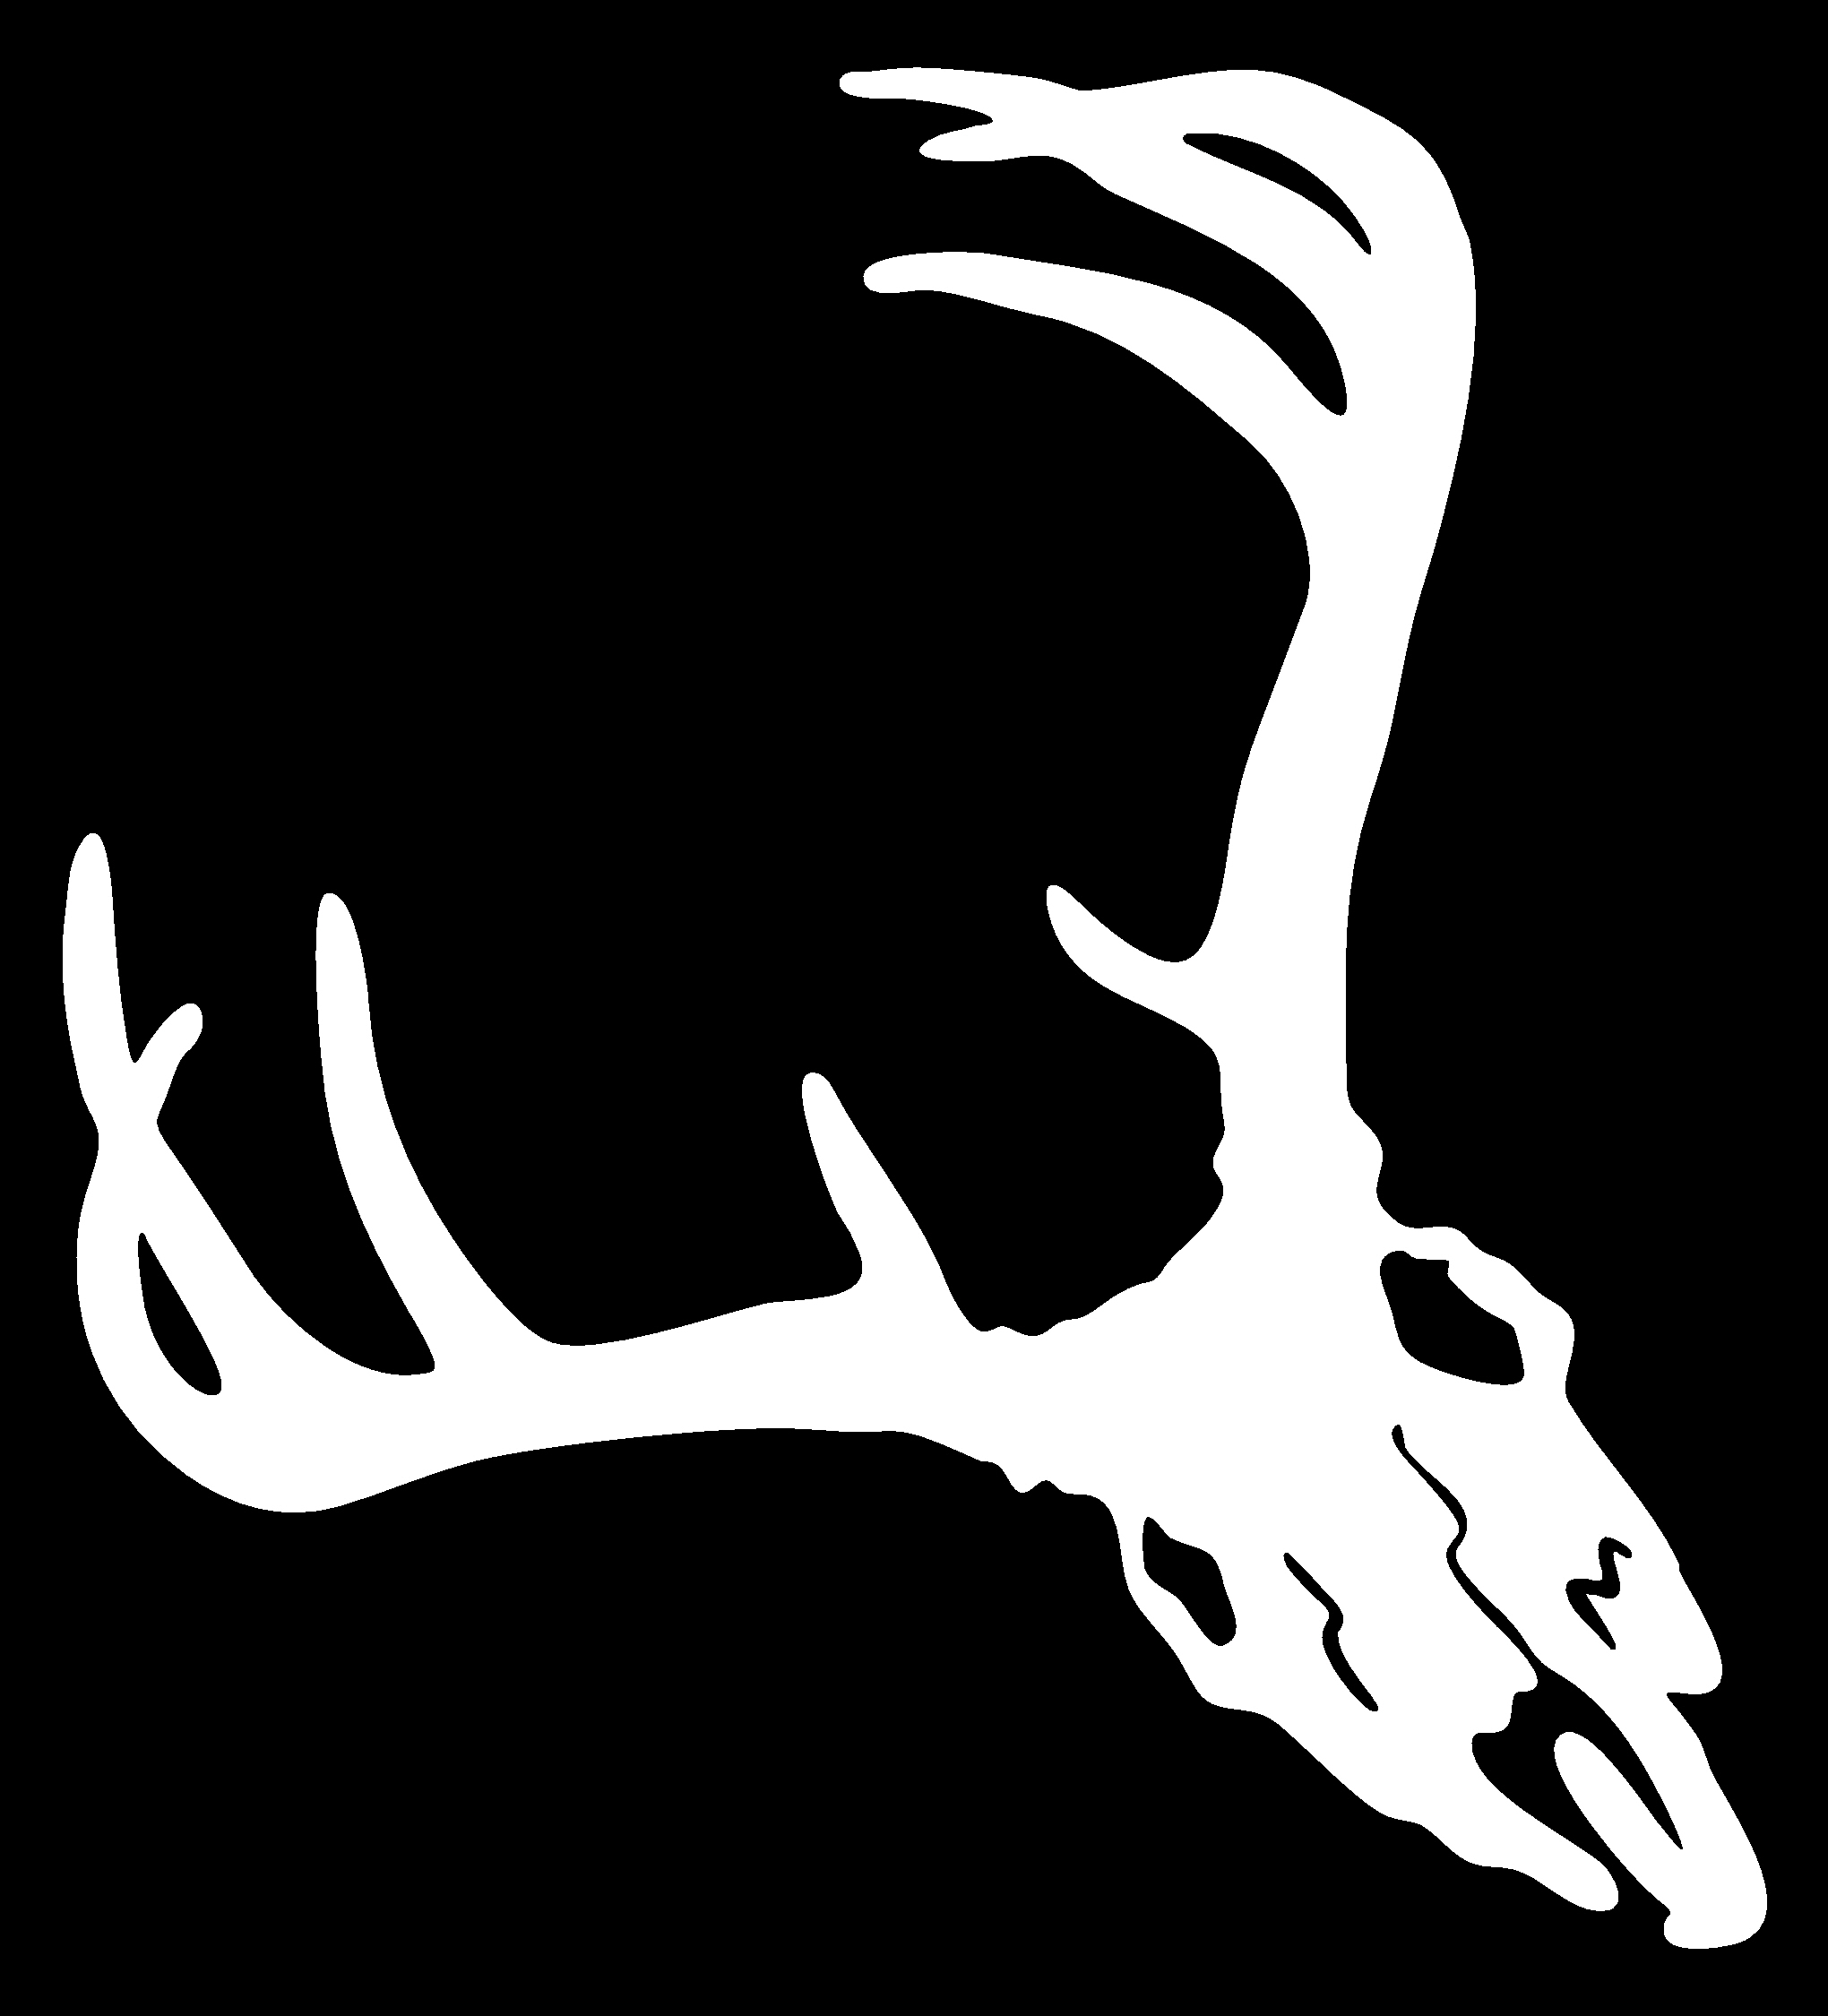 Deer Rack   Clipart Best